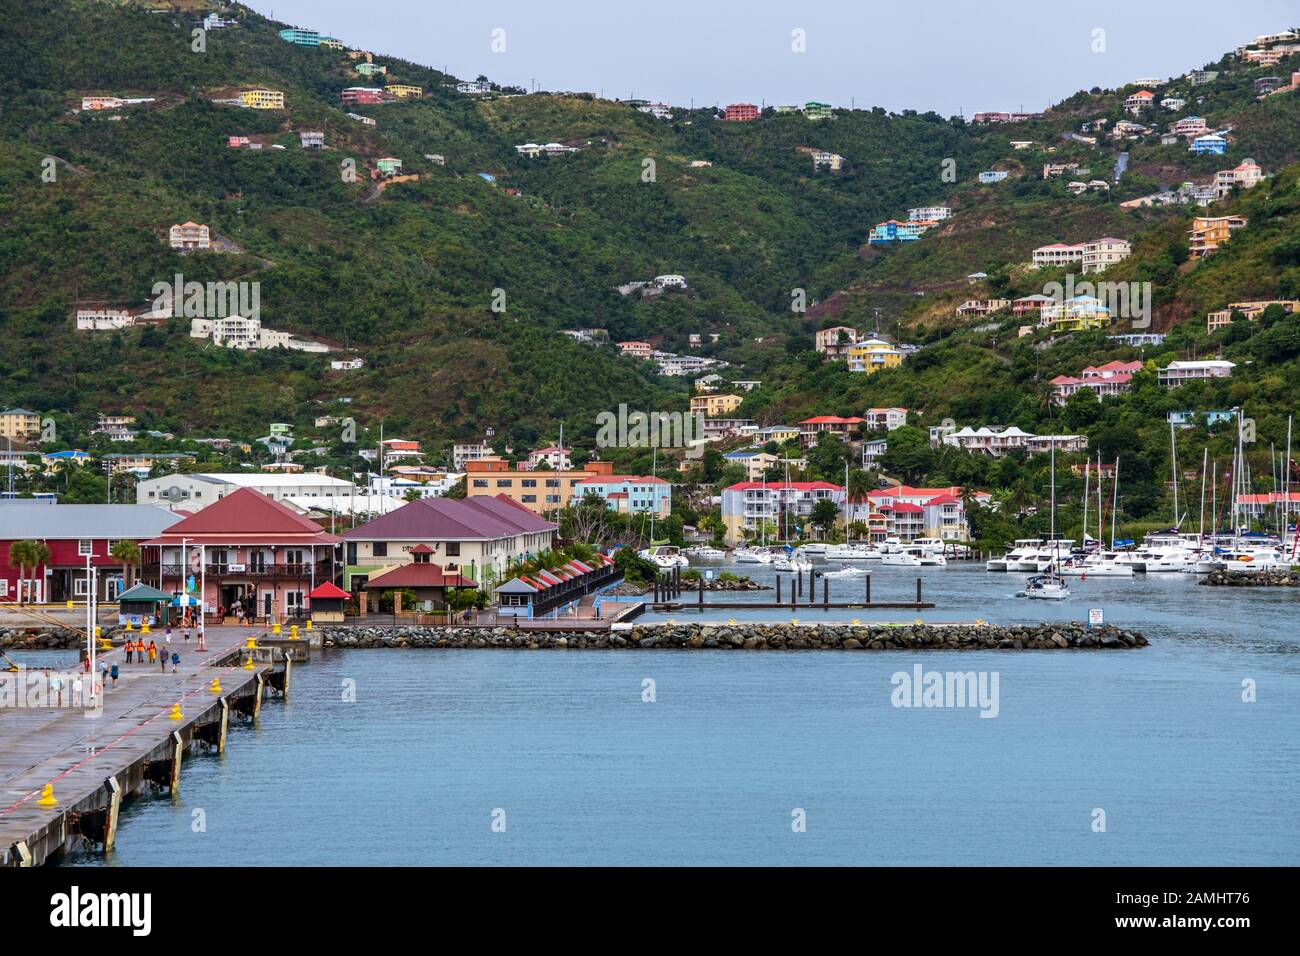 La terminal de cruceros, Tortola Pier Park, Road Town, Tortola, Islas Vírgenes Británicas, Indias Occidentales, el Caribe Foto de stock